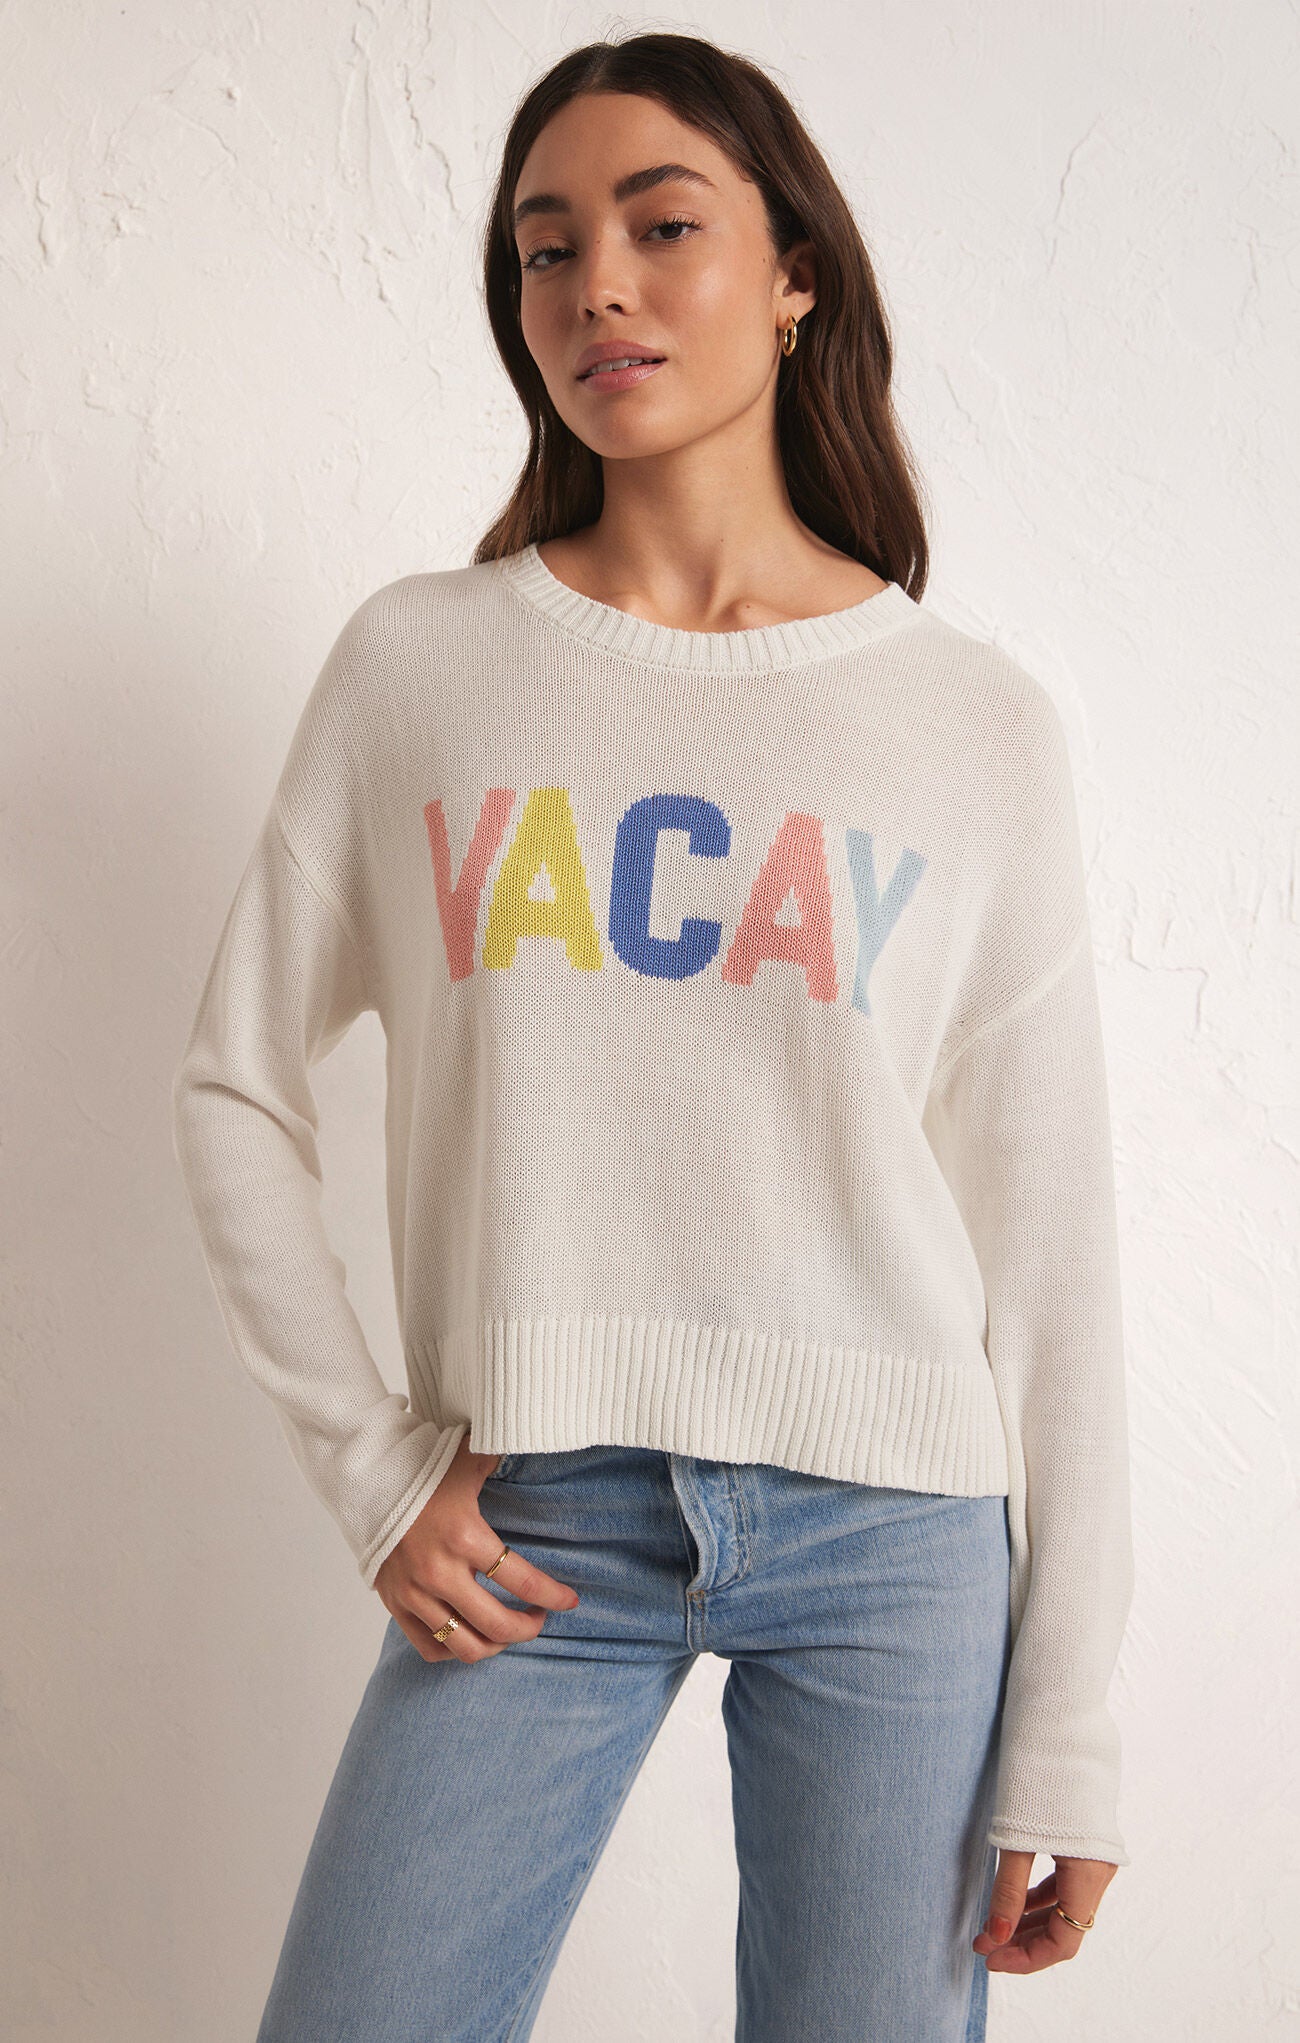 ZSupply 'Sienna Vacay Sweater'